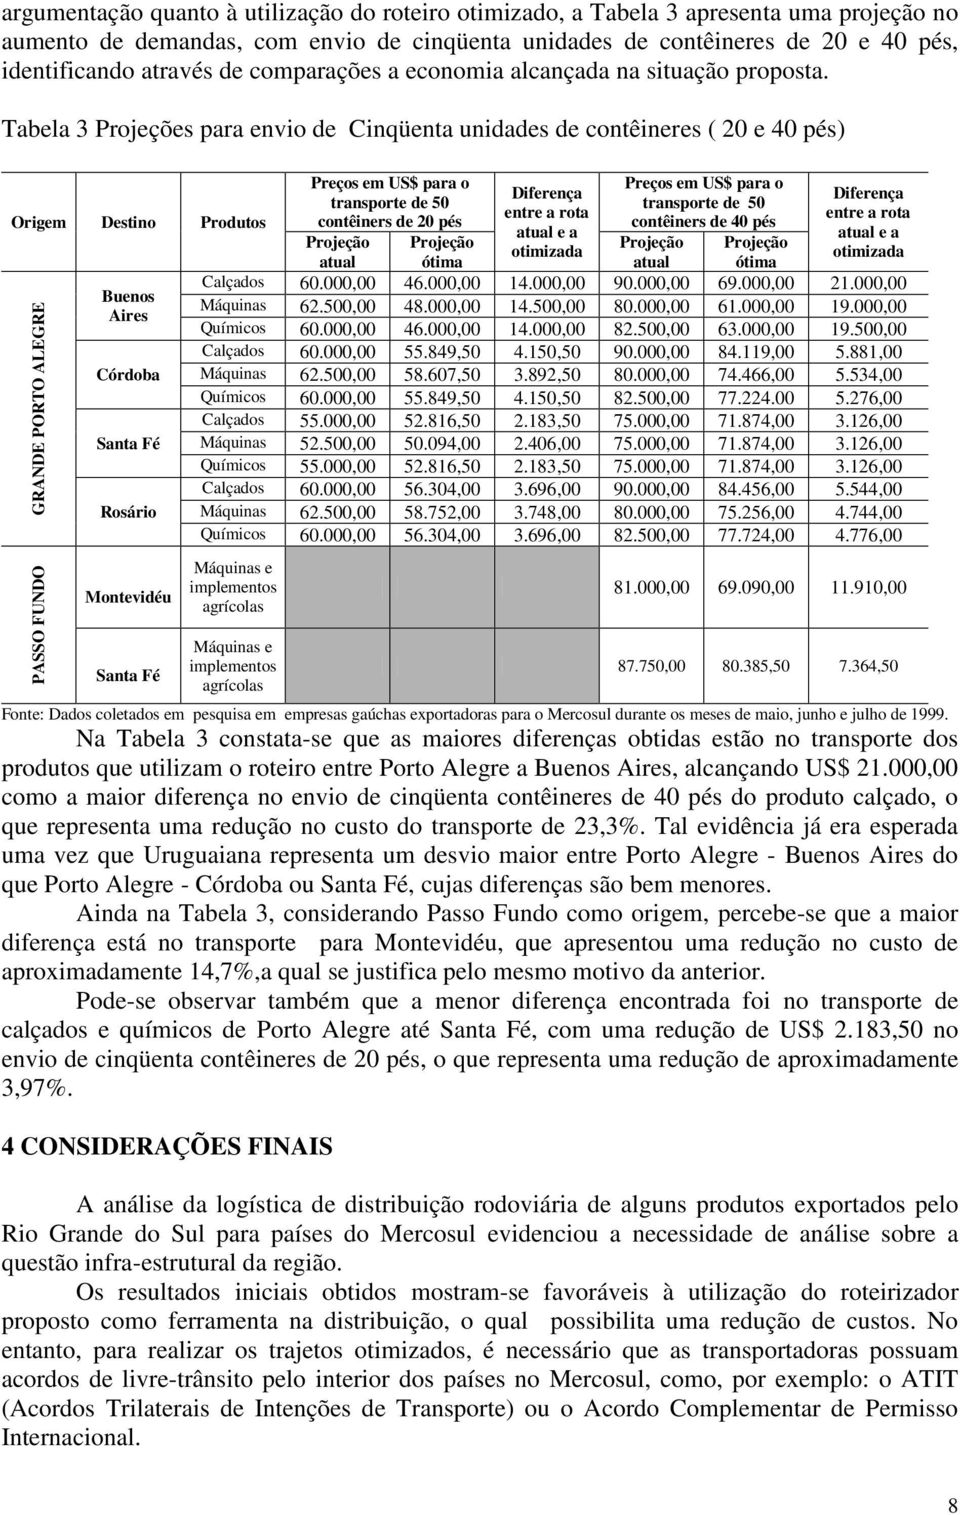 Tabela 3 Projeções para envio de Cinqüenta unidades de contêineres ( 20 e 40 pés) Origem Destino Produtos GRANDE PORTO ALEGRE Buenos Aires Córdoba Rosário Preços em US$ para o transporte de 50